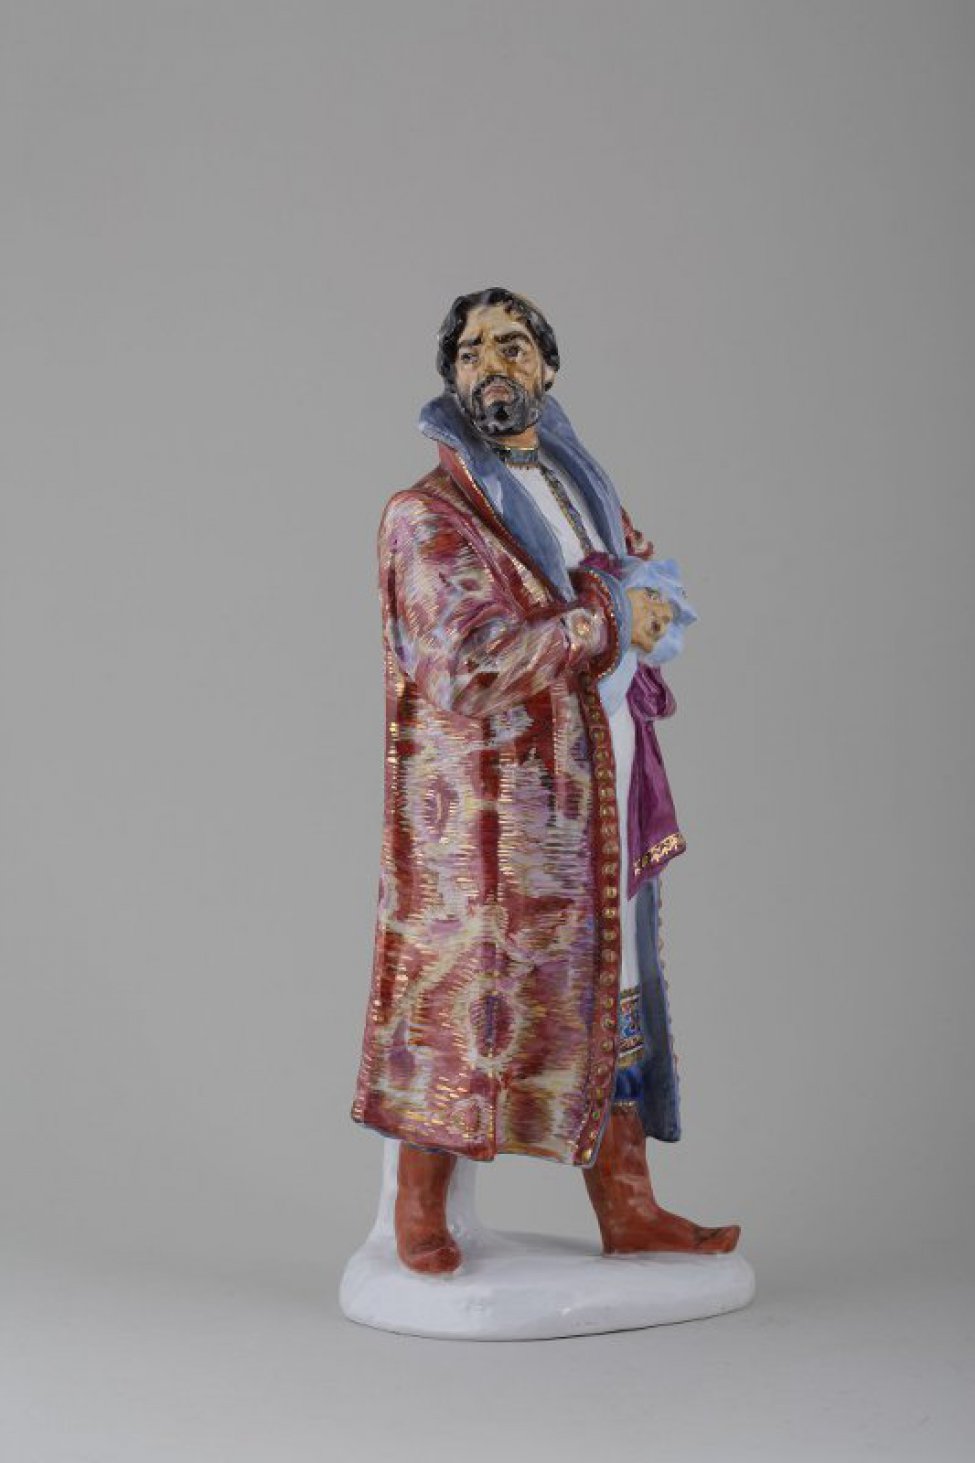 На невысоком основании фигура мужчины в царском костюме 16 века. На нем длинная, с орнаментом, белая рубаха; сверху - узорный кафтан; на голове круглая шапка; в руках, прижатых к груди, два платка.